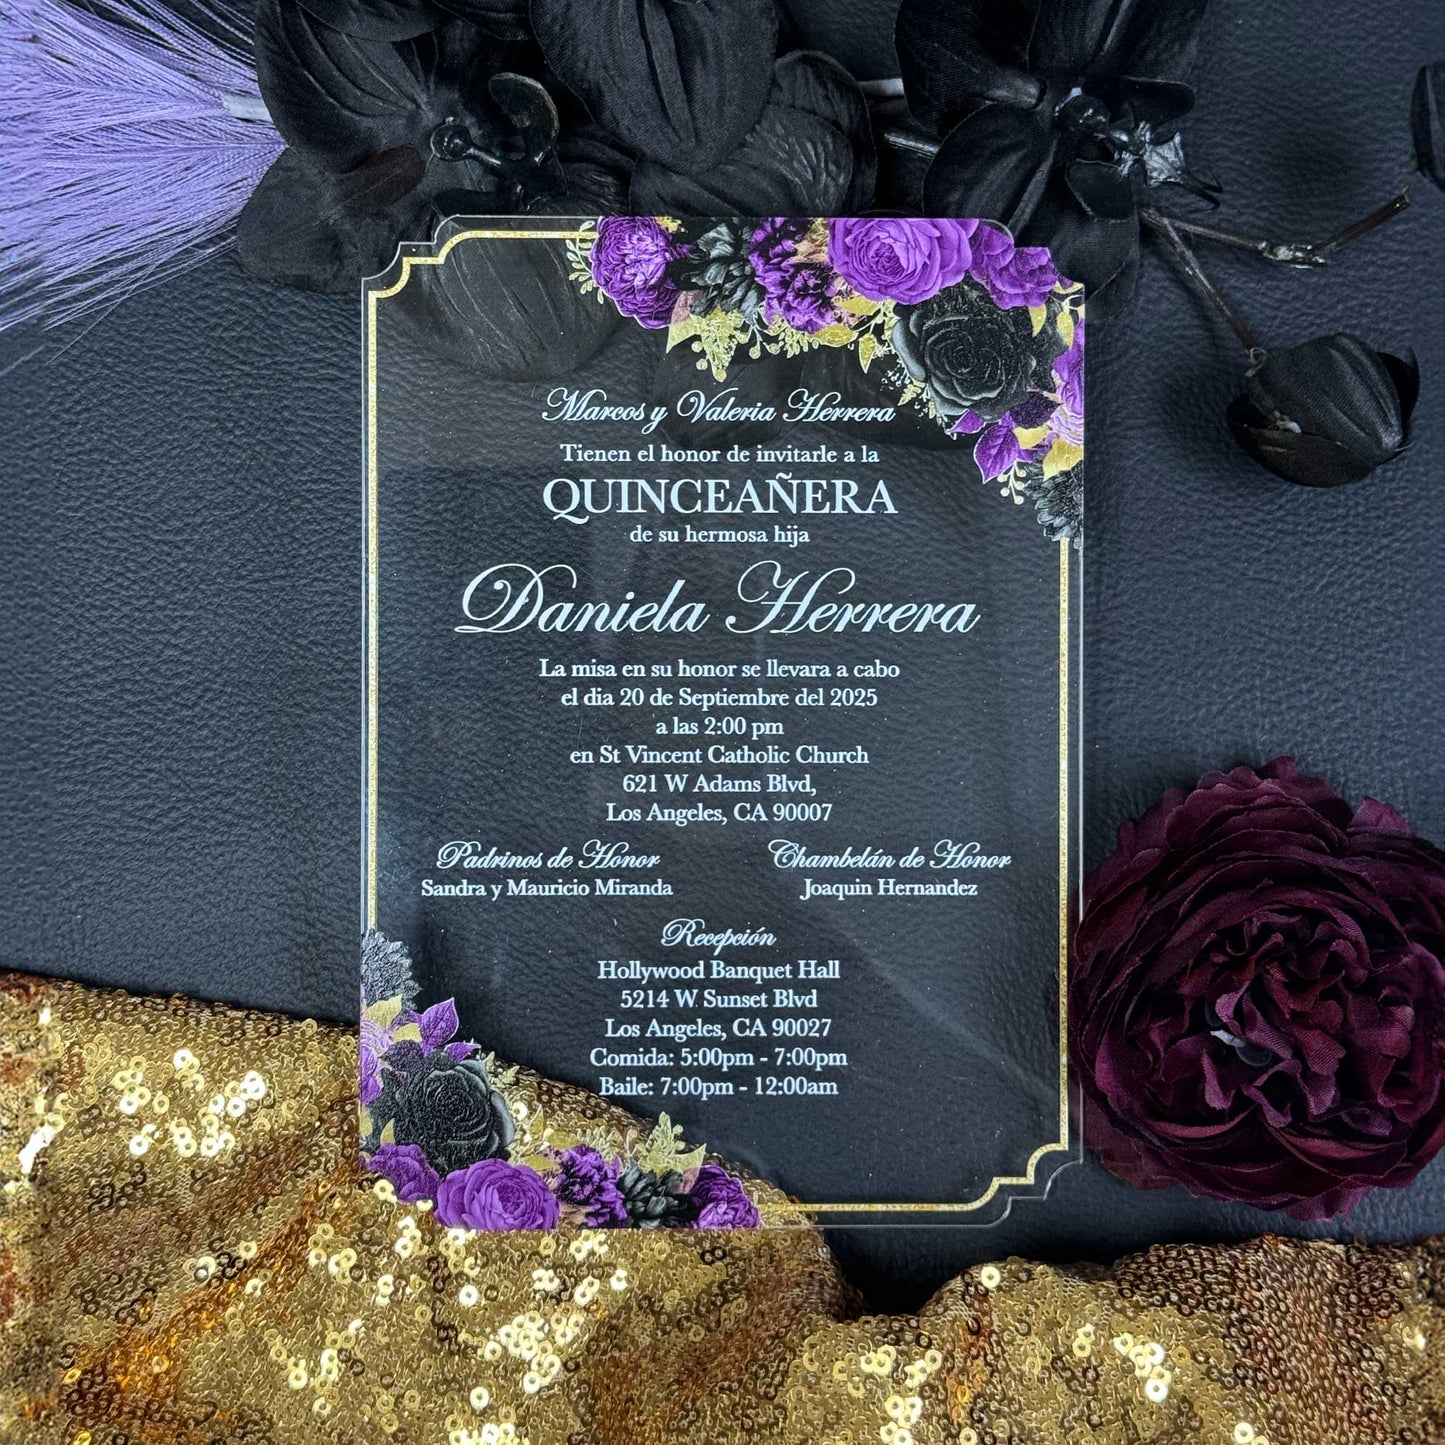 Acrylic Quinceañera Queen 01